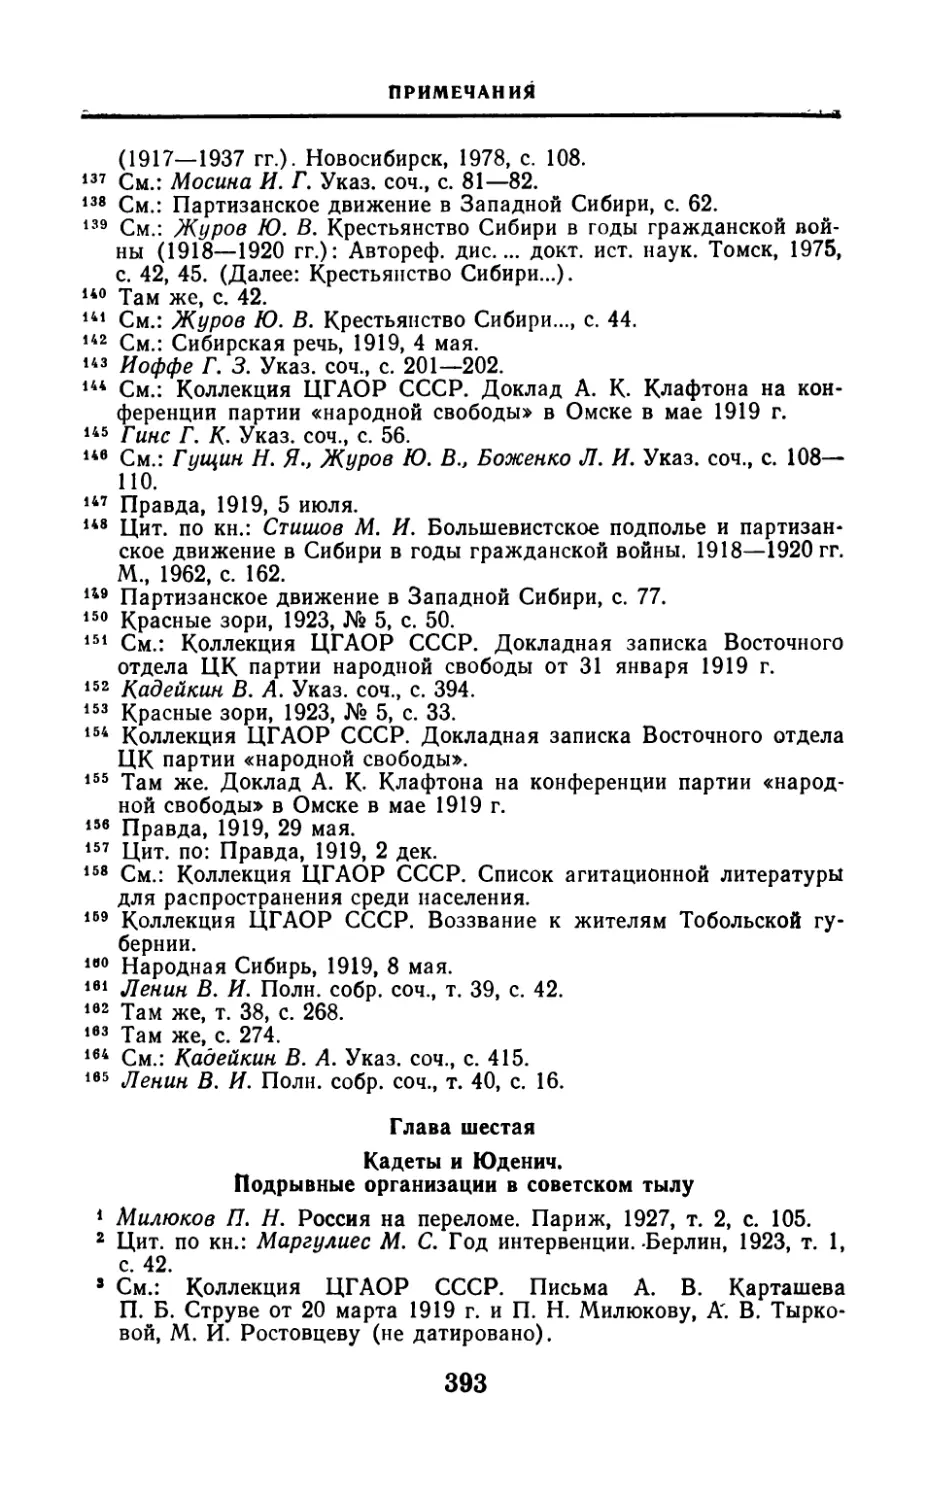 Глава шестая Кадеты и Юденич. Подрывные организации в советском тылу